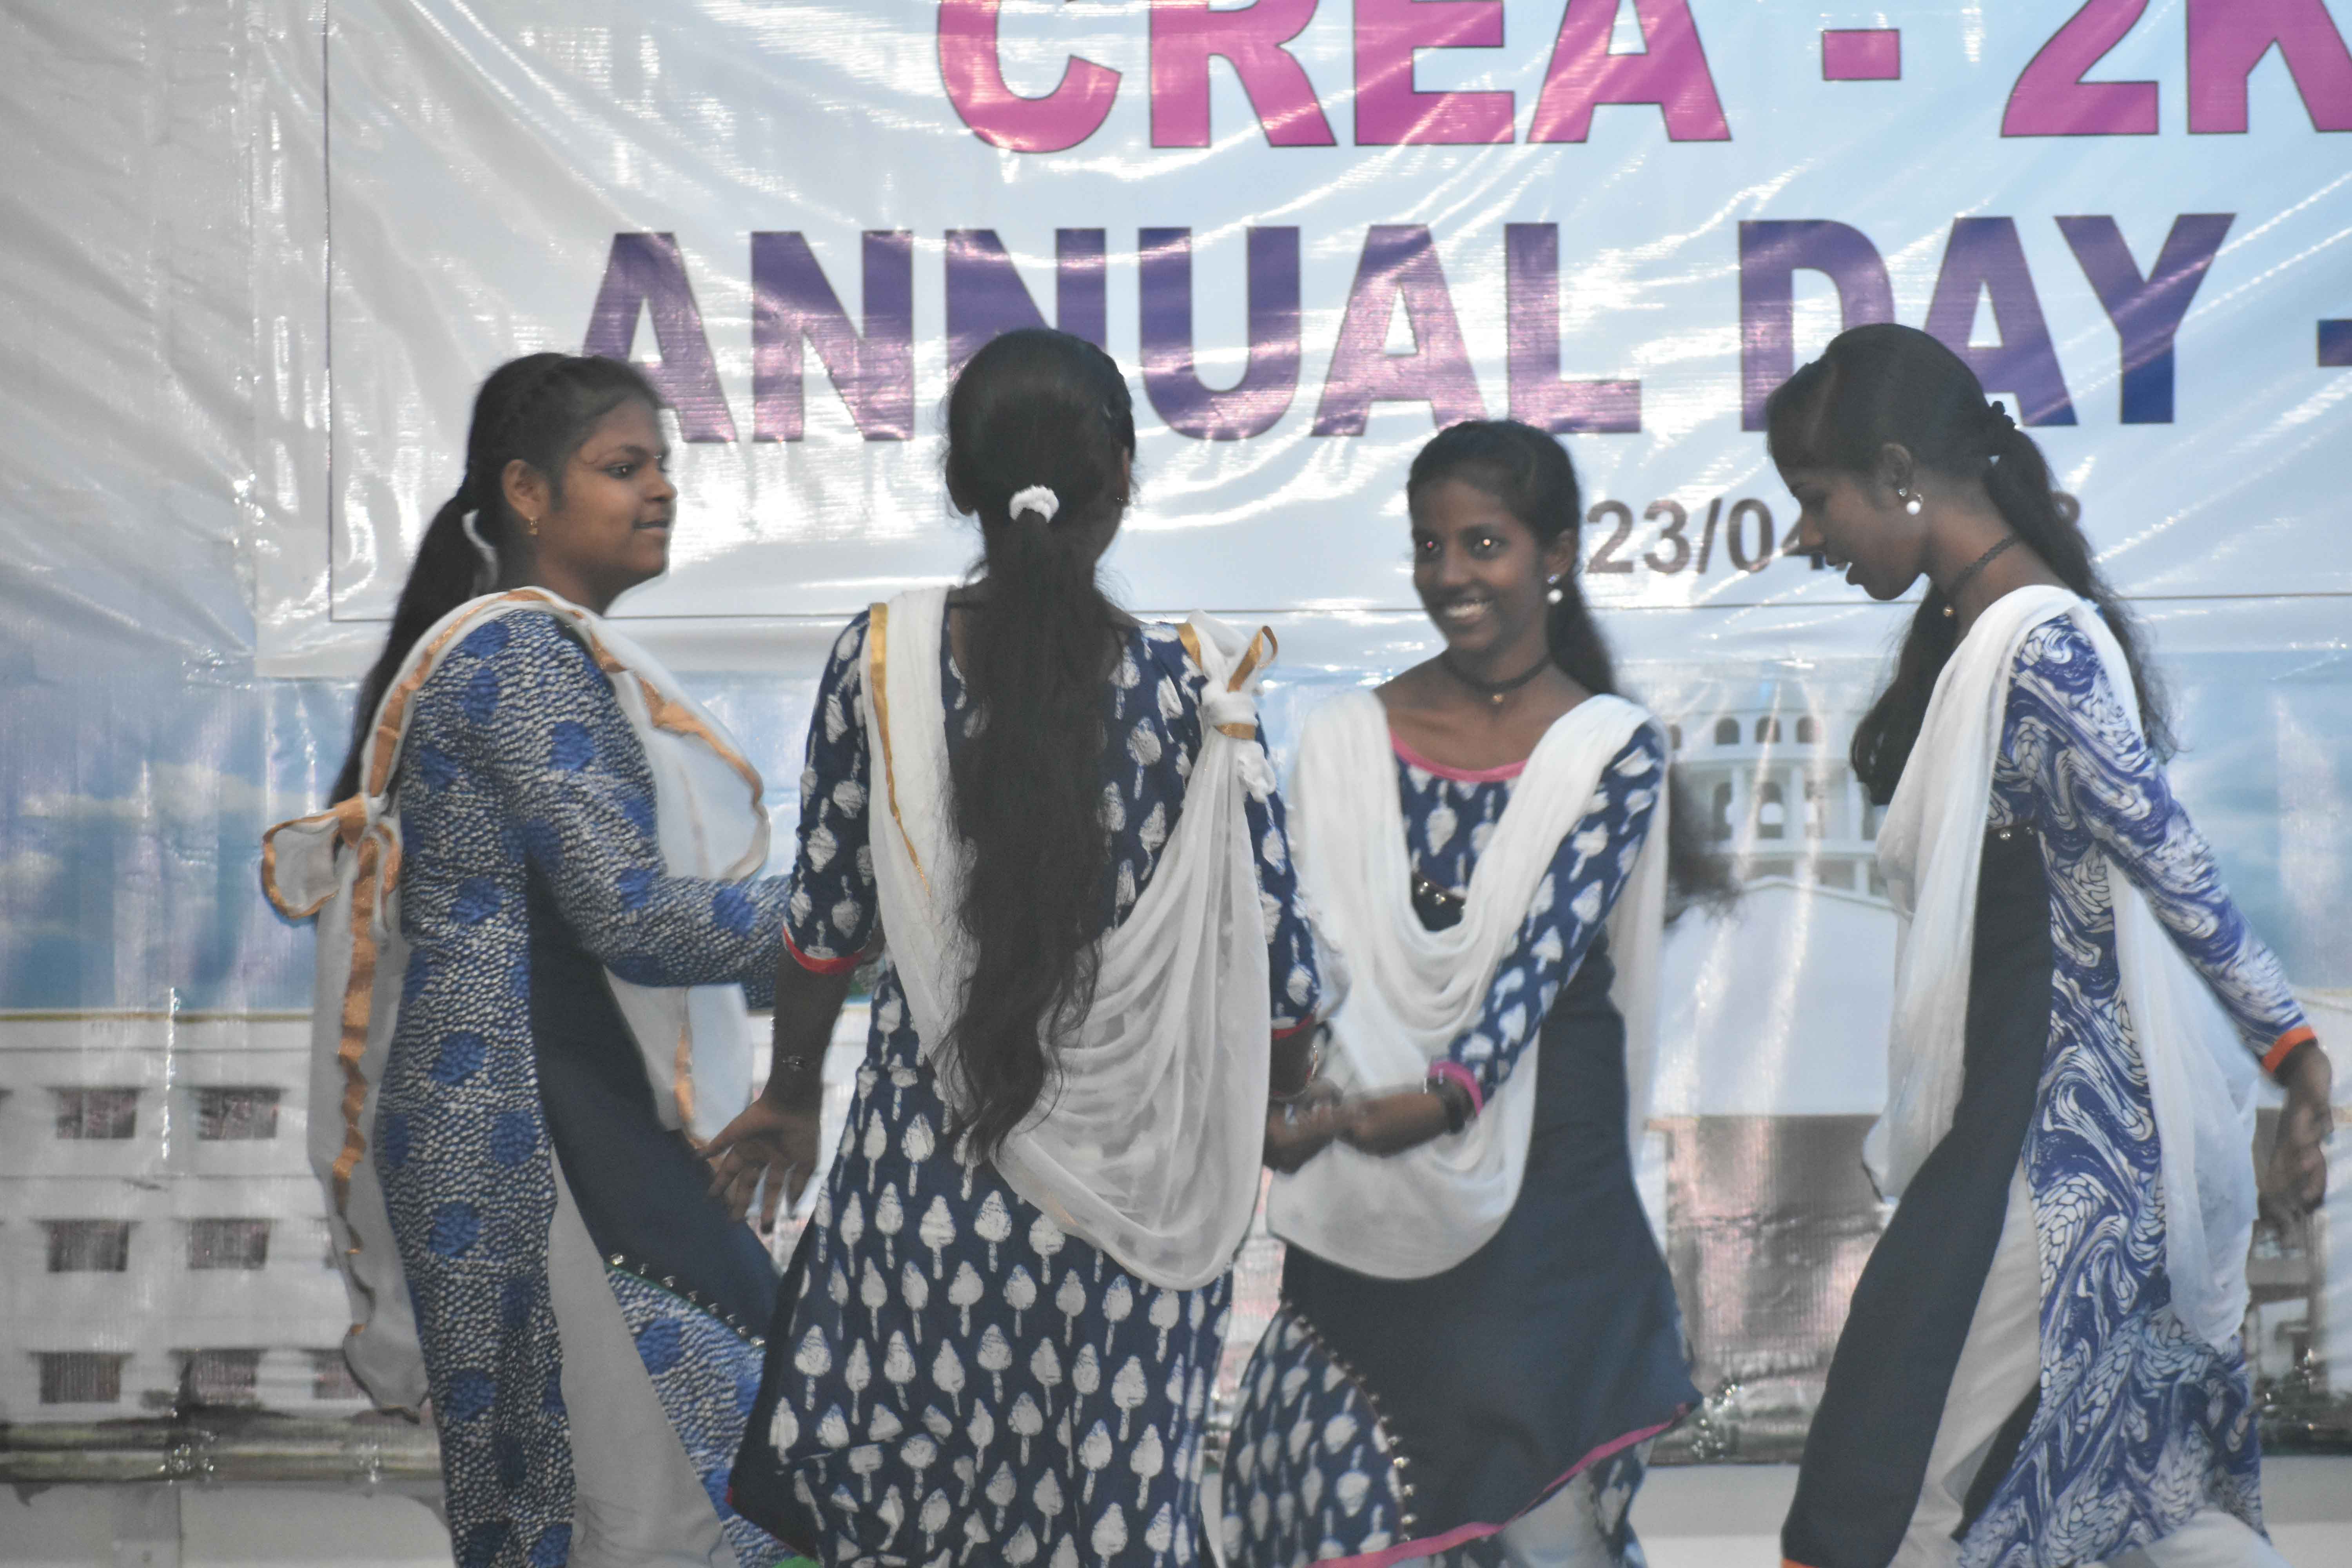 Girls Dance in Annual Day Celebration- CREA 2K18 at AVIT